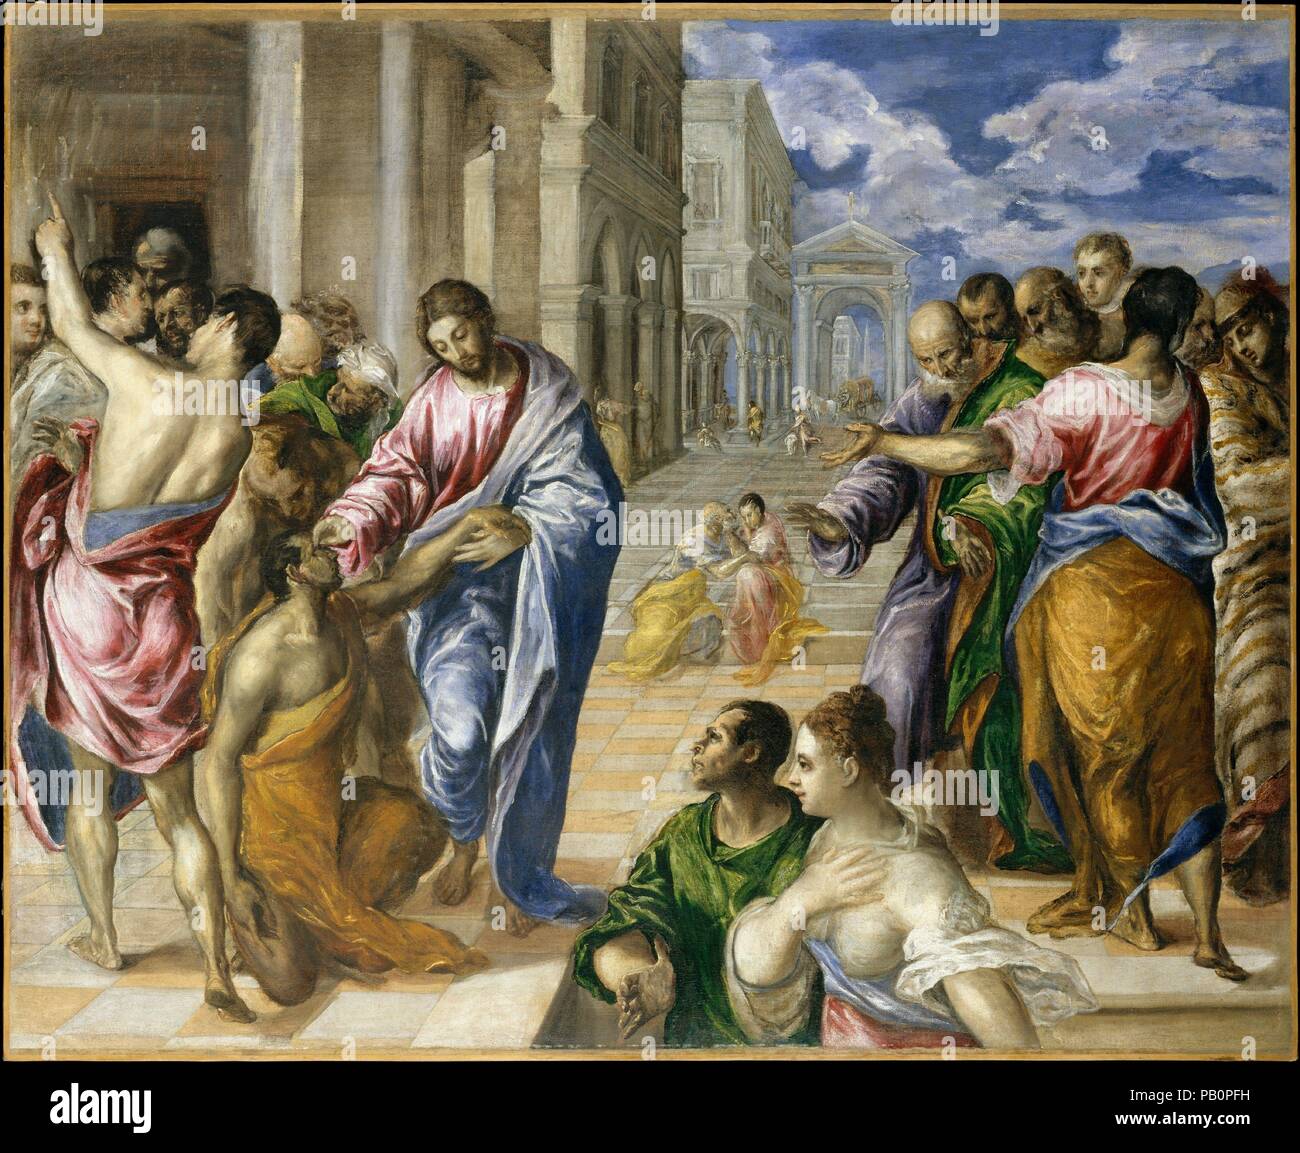 Le Christ la guérison de l'aveugle. Artiste : El Greco (Domenikos Theotokopoulos) (grec, Iráklion (Candia) 1540/41-1614 Toledo). Dimensions : 47 x 57 1/2 in. (119,4 x 146,1 cm). Date : ca. 1570. El Greco peint ce chef d'oeuvre de narration dramatique soit à Venise ou à Rome, où il a travaillé après avoir quitté la Crète en 1567 et avant de passer à l'Espagne en 1576. Il illustre l'Évangile de l'origine de Christ guérissant un aveugle par l'onction ses yeux. Les deux personnages au premier plan peut être les parents de l'aveugle. La partie supérieure gauche de la composition n'est pas terminé. El Greco peint deux autres versions de Banque D'Images